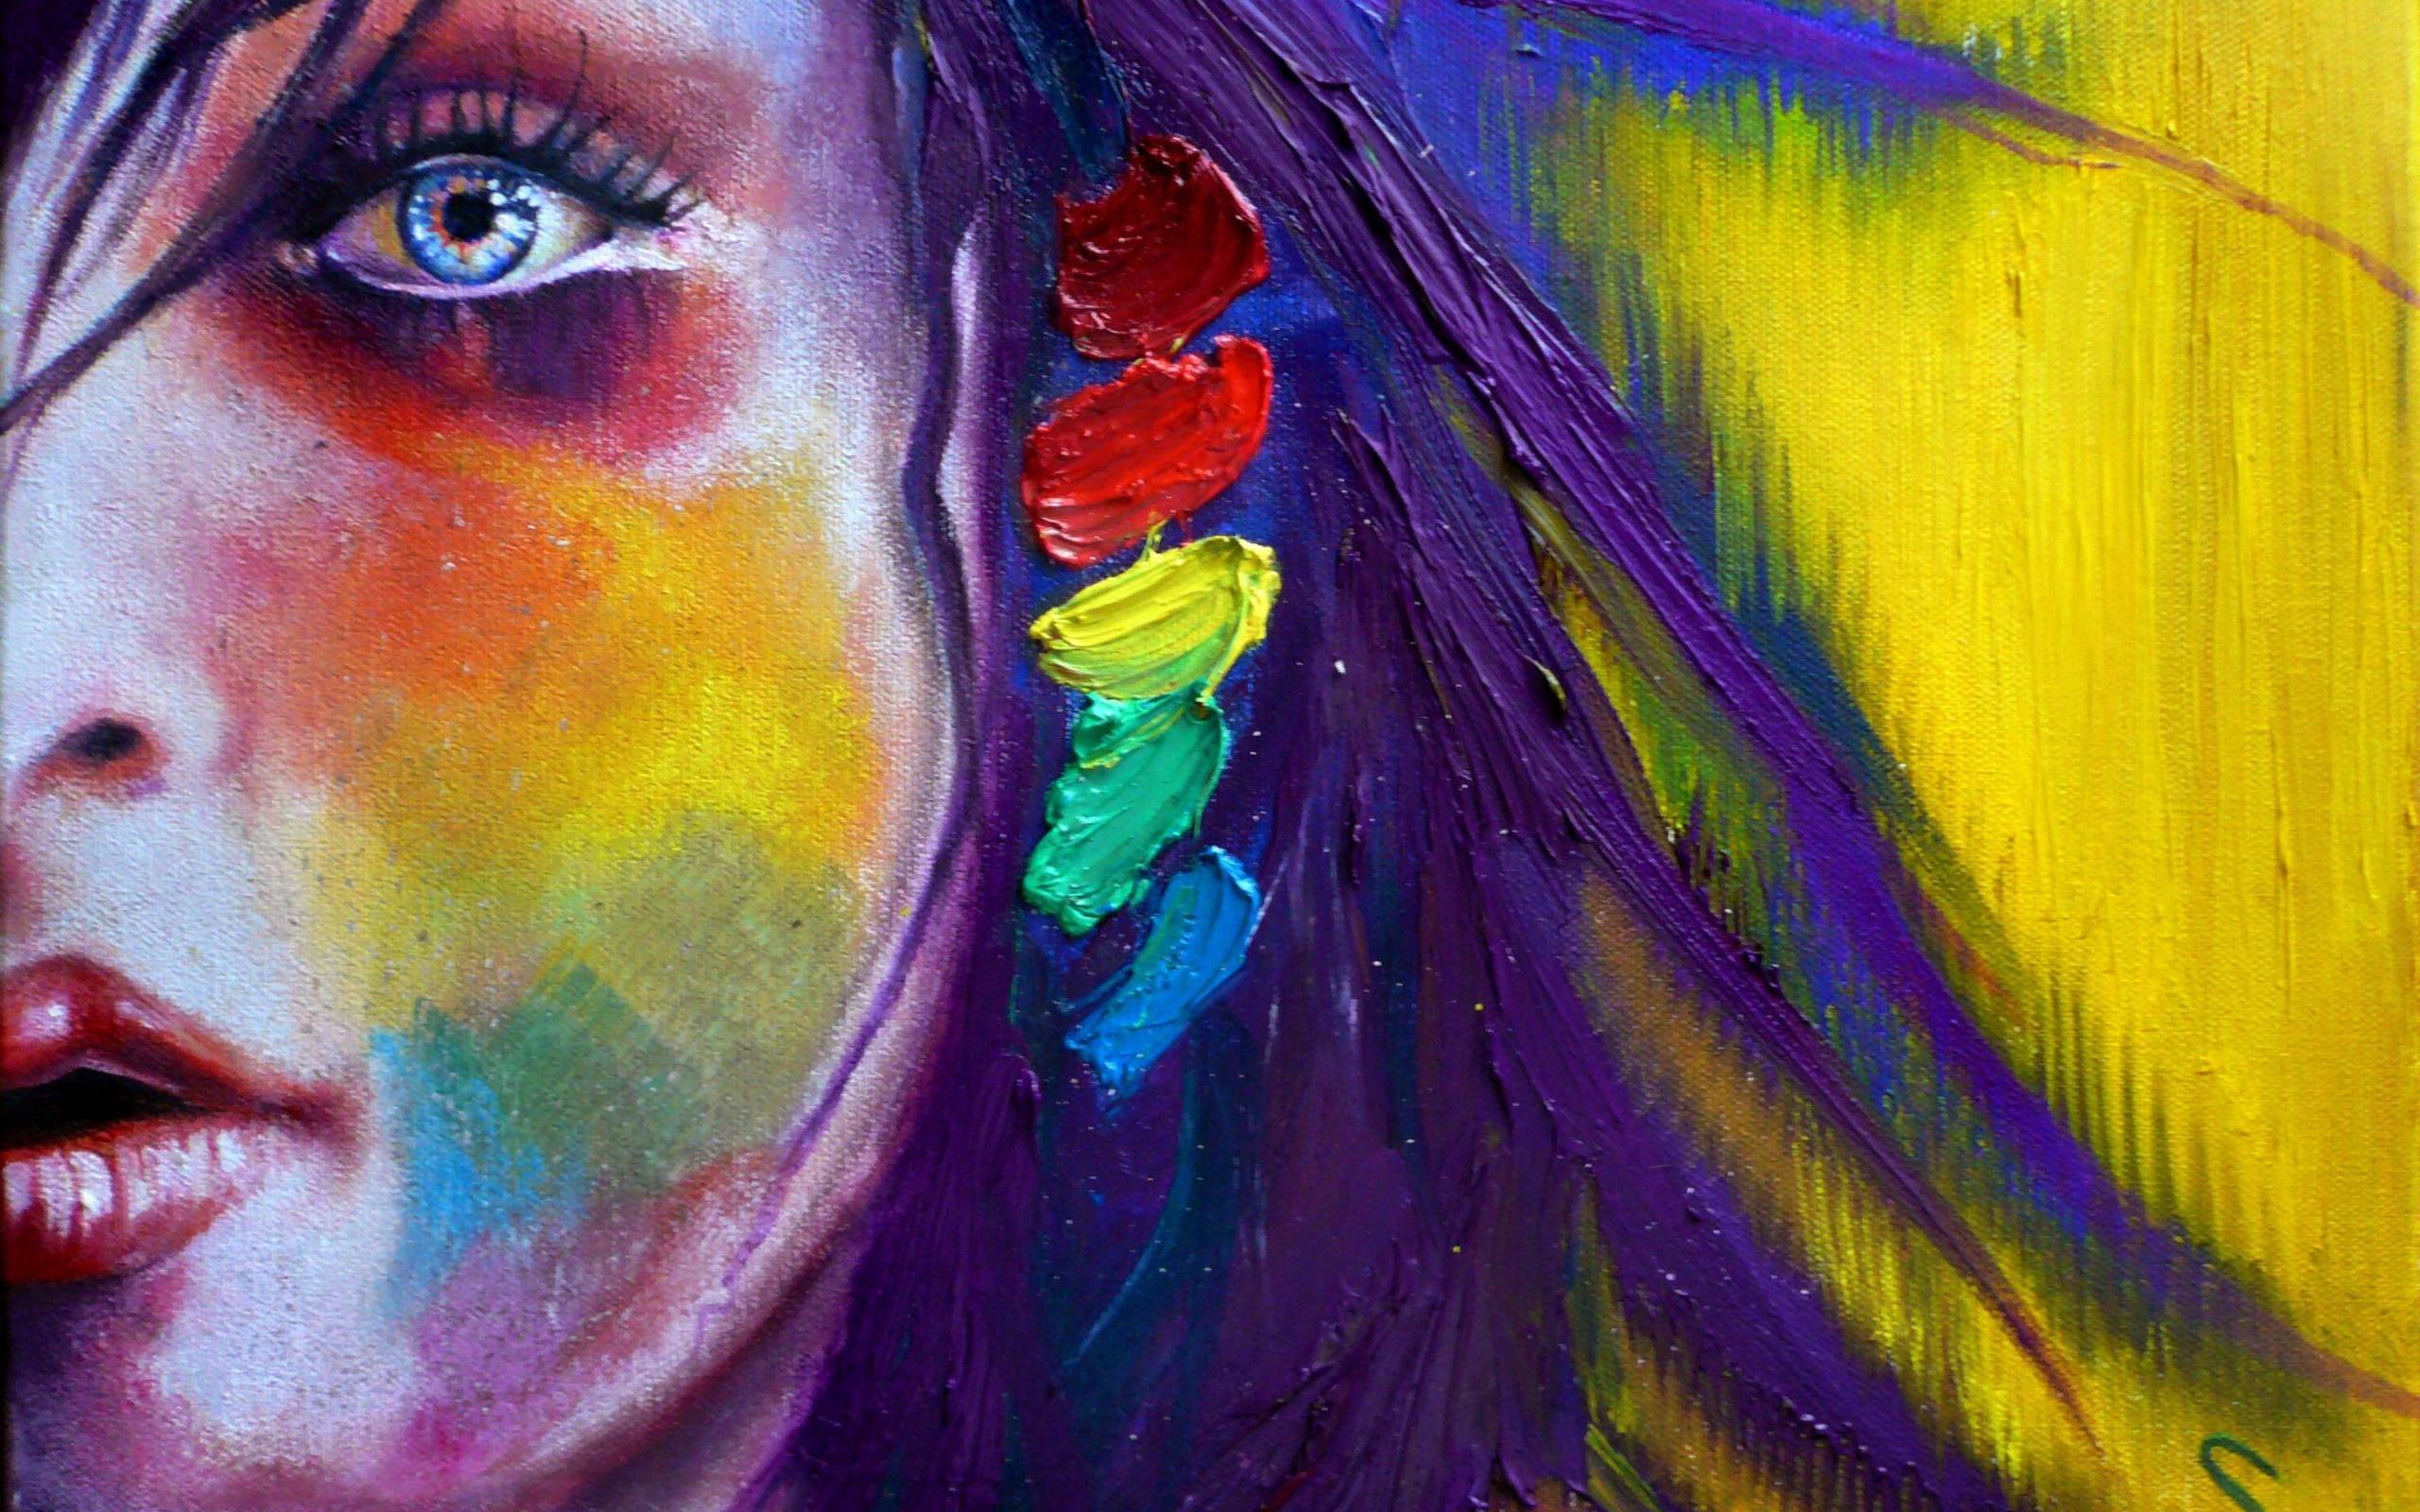 Paint Abstract Art Women Eye Wallpaper Background 64260 2560x1600px